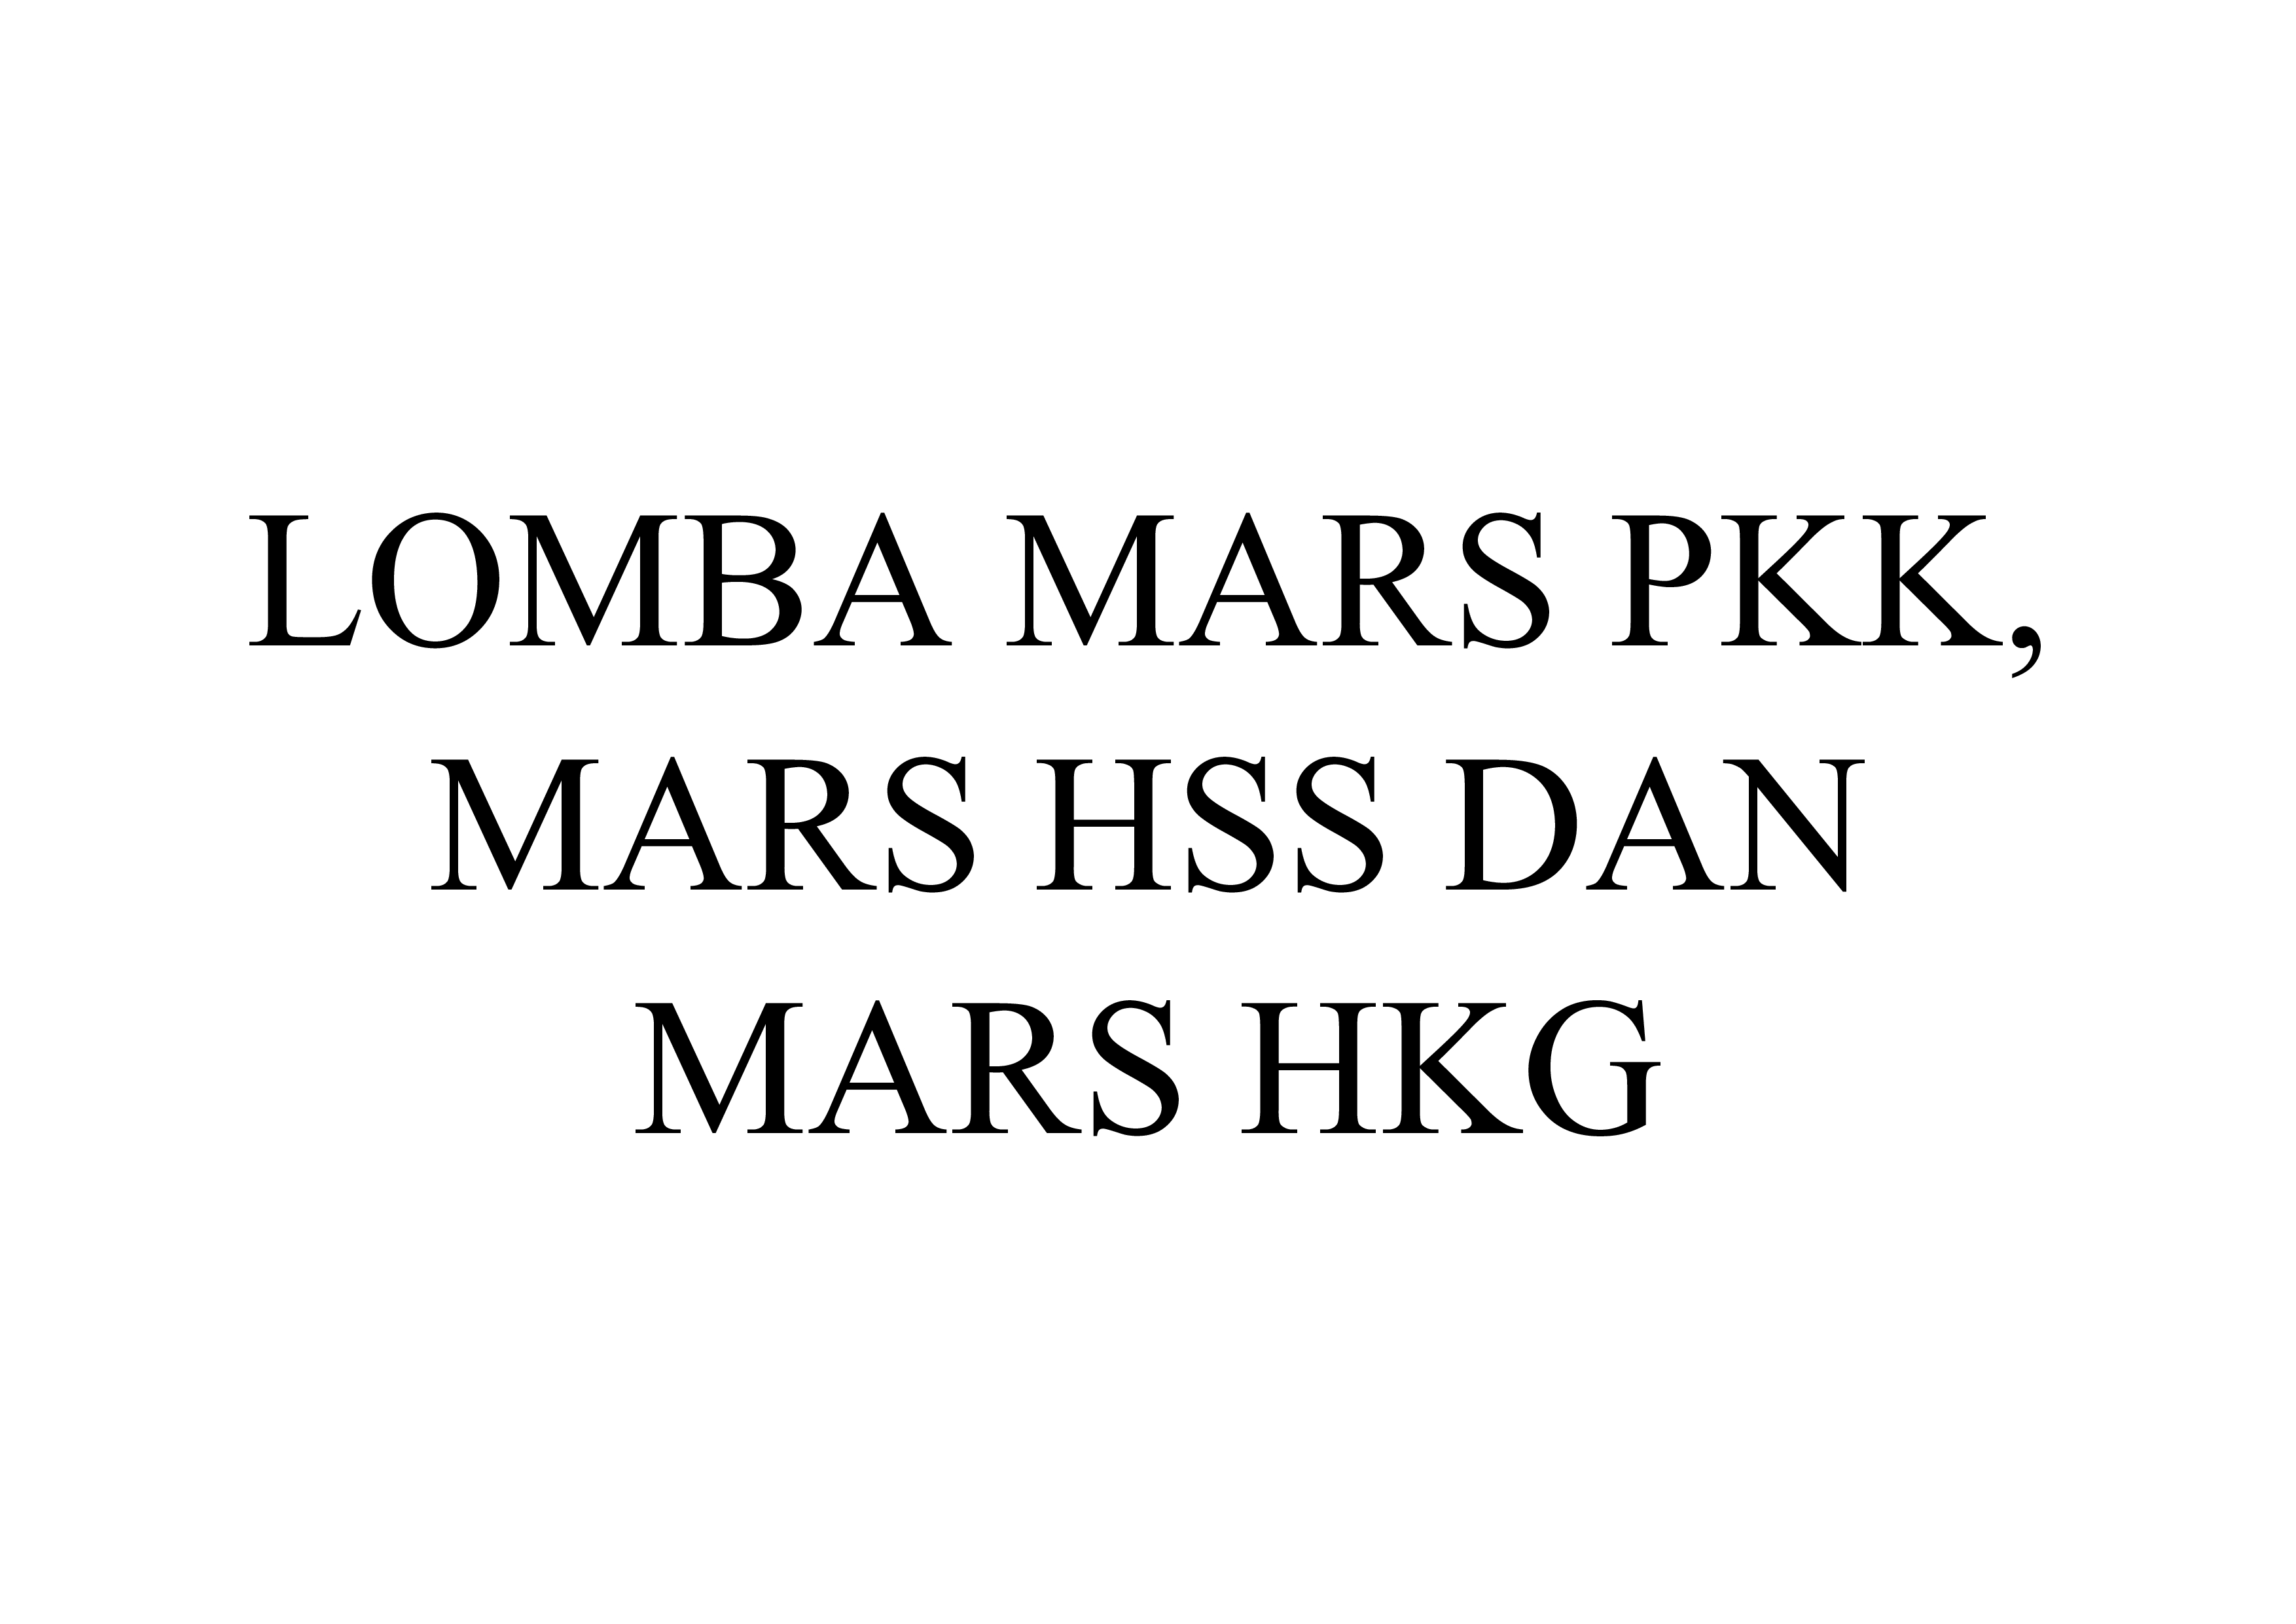 Bahan Perlengkapan Lomba Mars PKK, Mars HSS dan Mars HKG